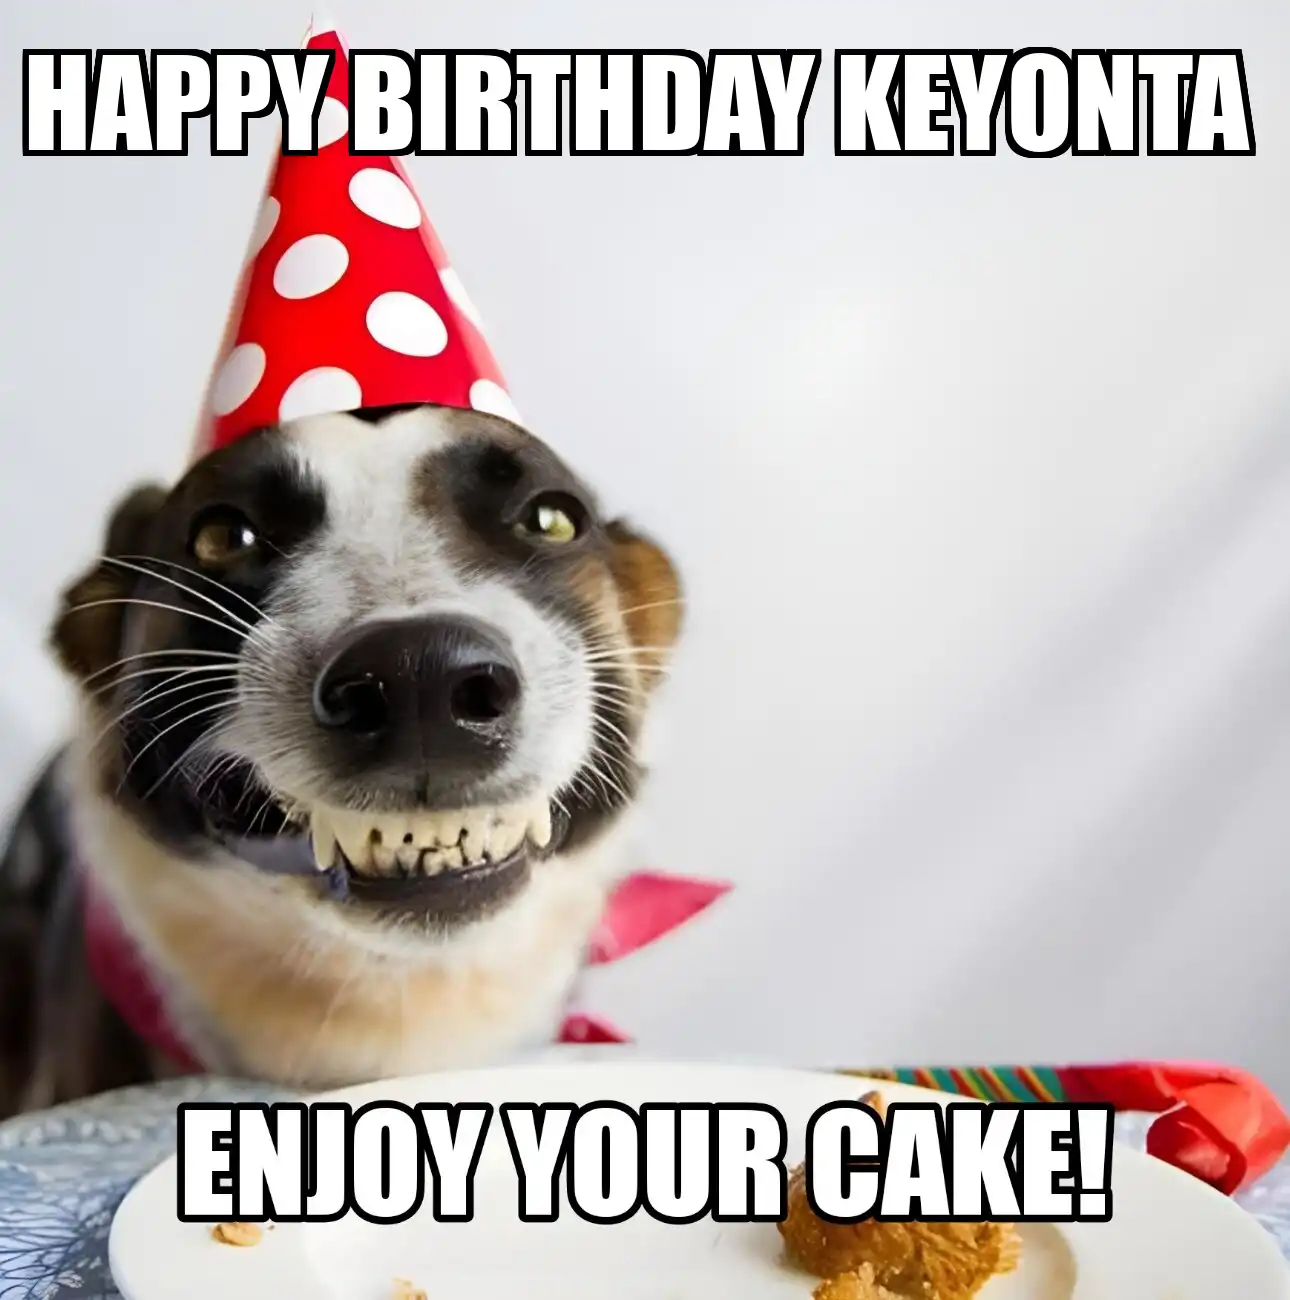 Happy Birthday Keyonta Enjoy Your Cake Dog Meme